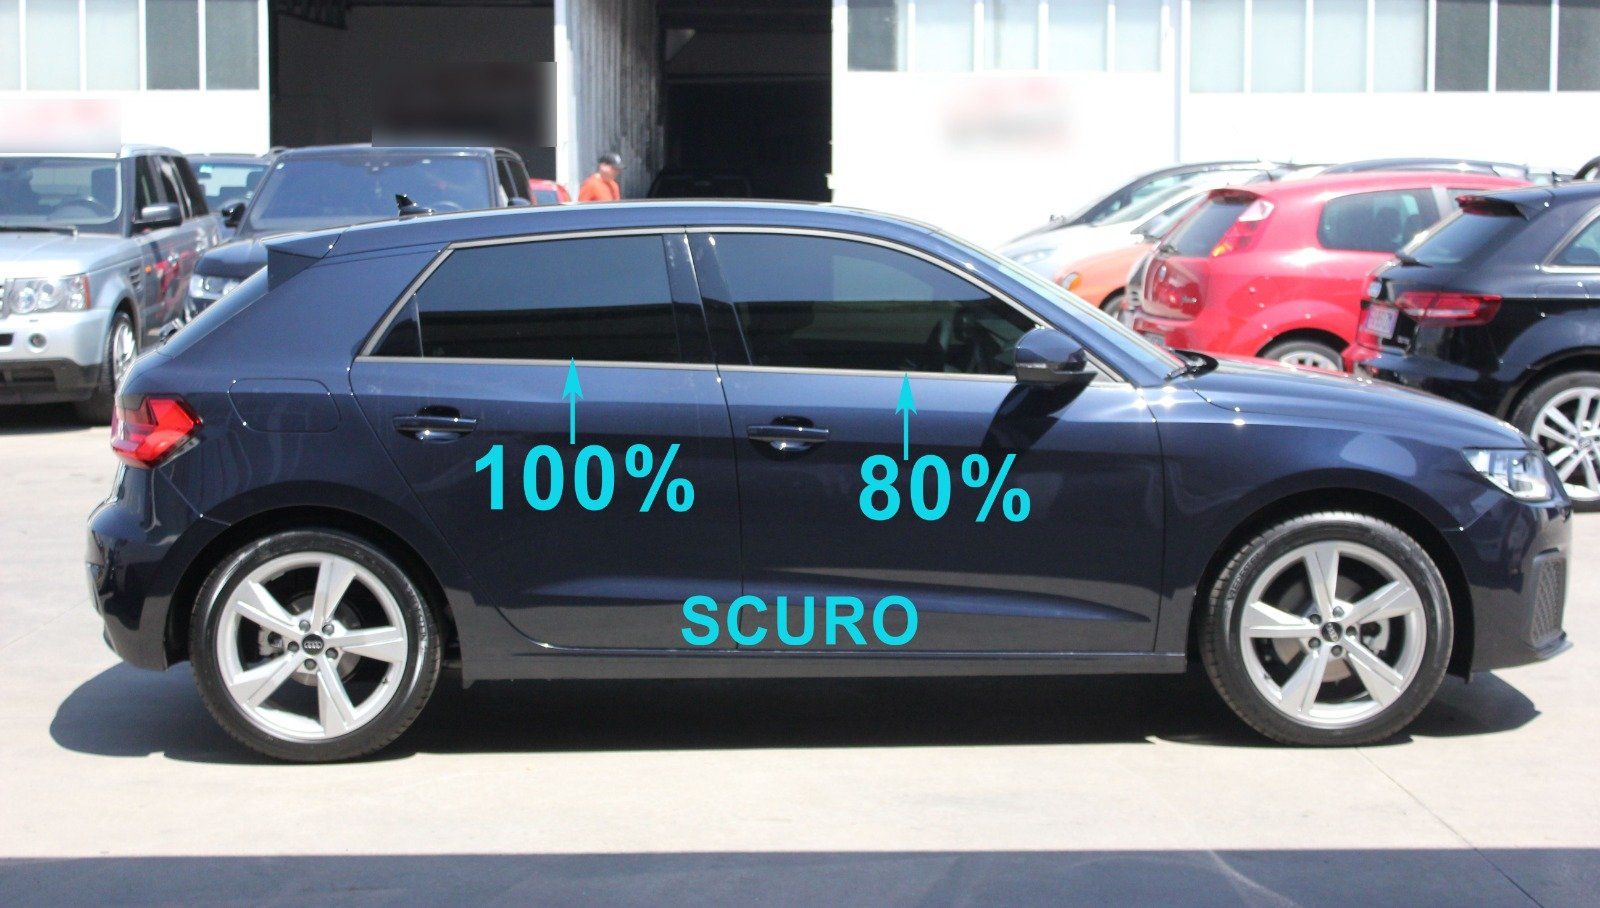 Nuova Audi A1  oscuramento vetri parte posteriore 100% di scuro, vetri anteriori 80 % di scuro